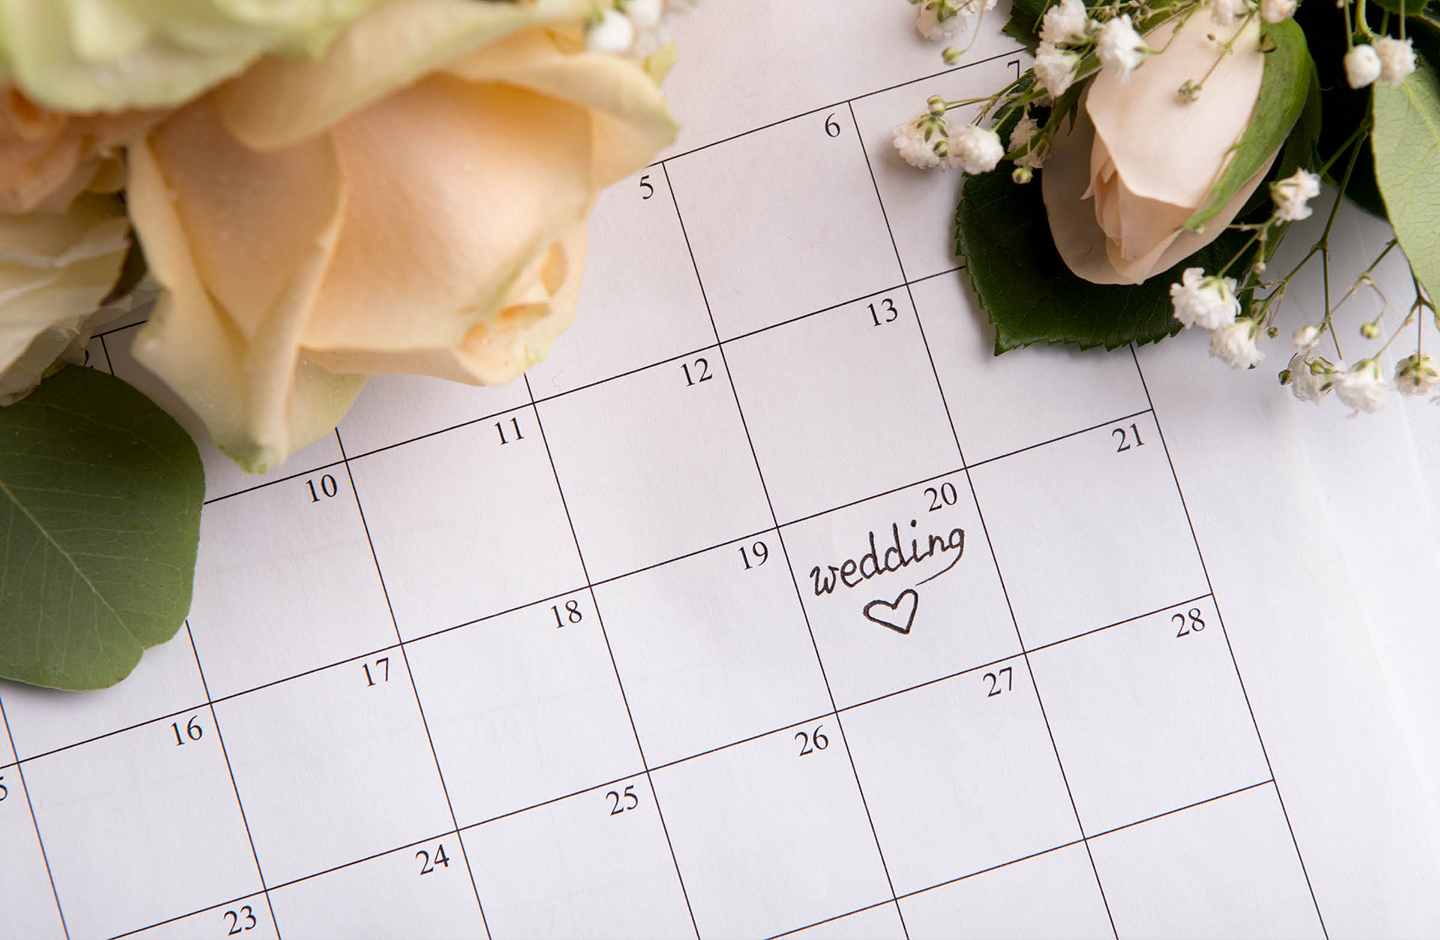 Terminkalender mit vermerktem Hochzeitstermin.